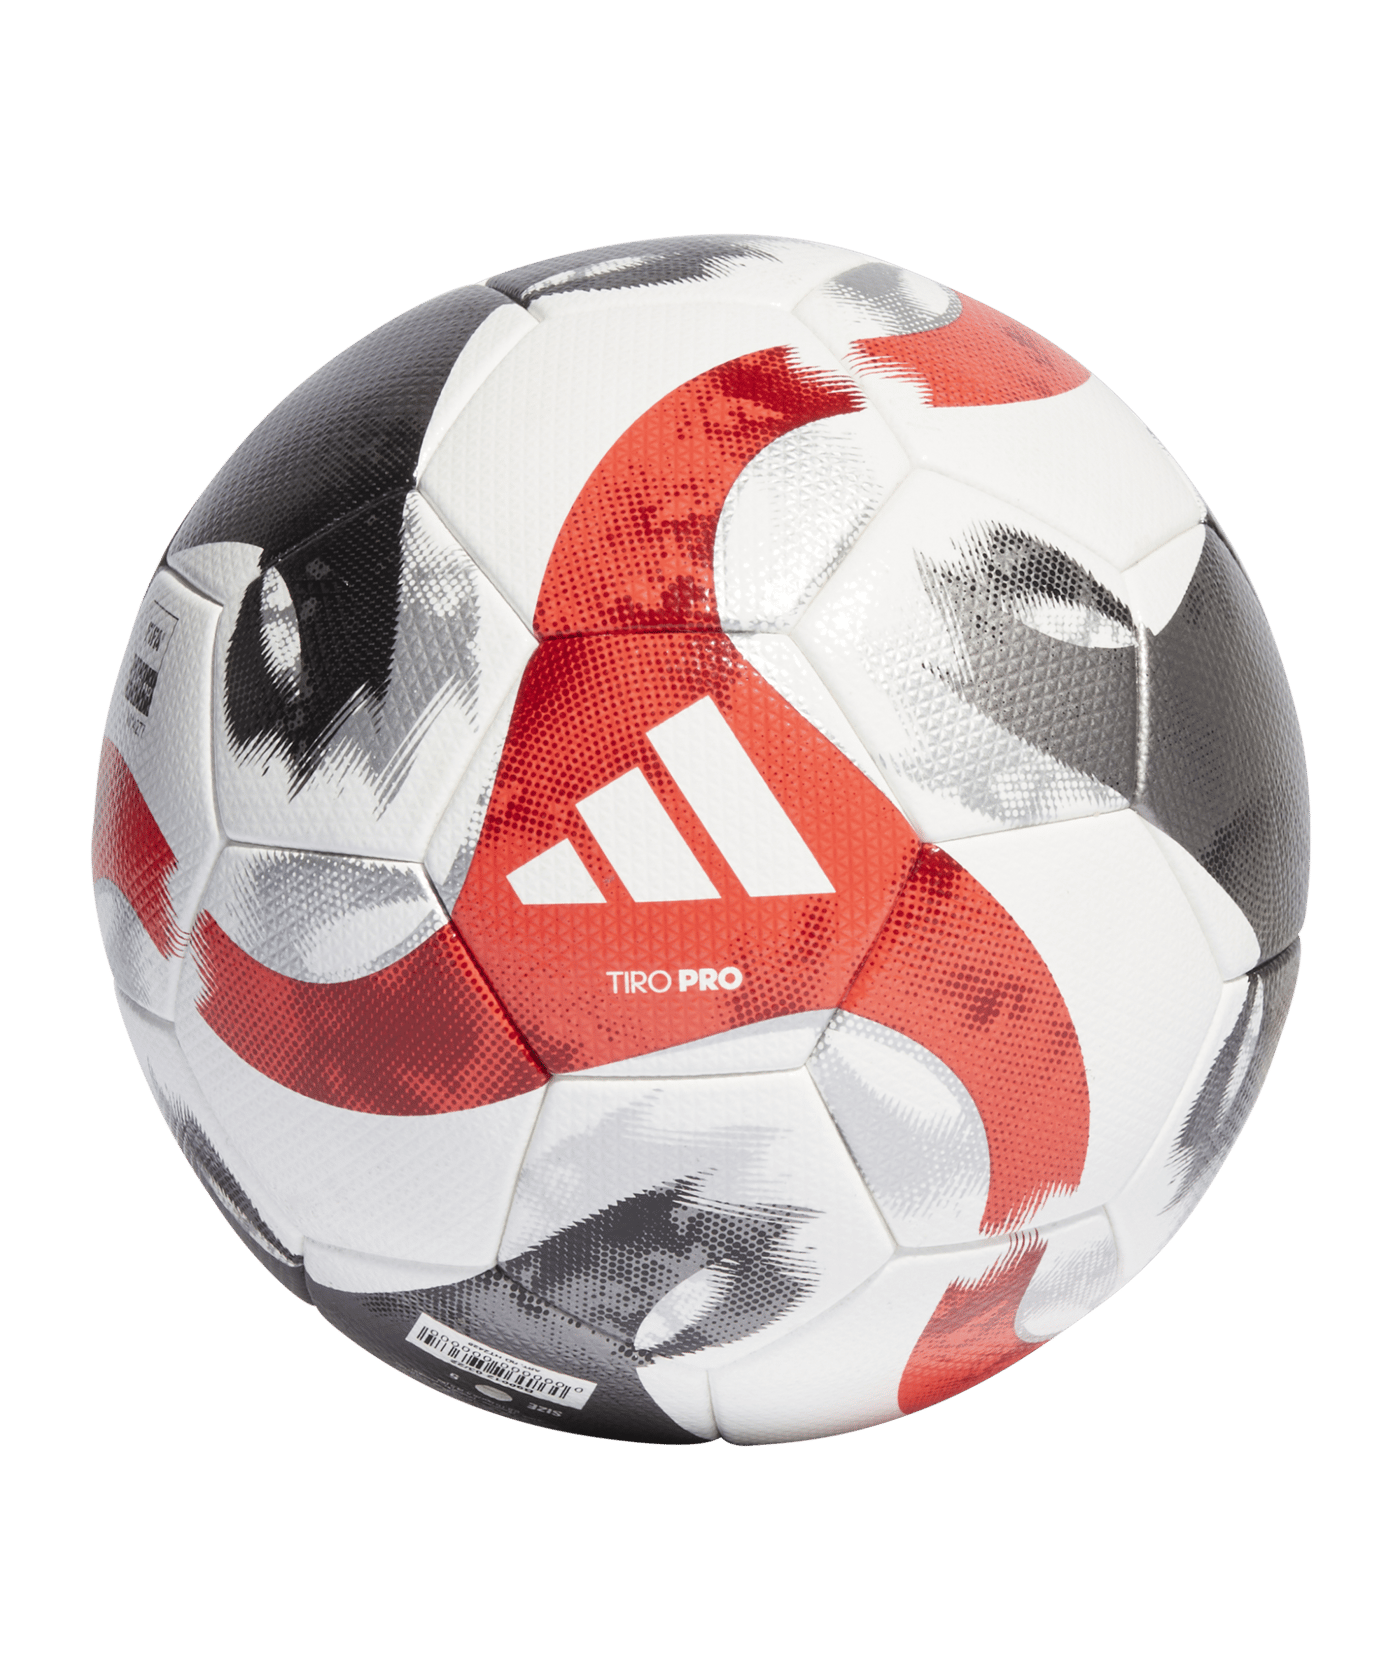 Adidas Tiro Pro Spielball Weiss Schwarz Orange